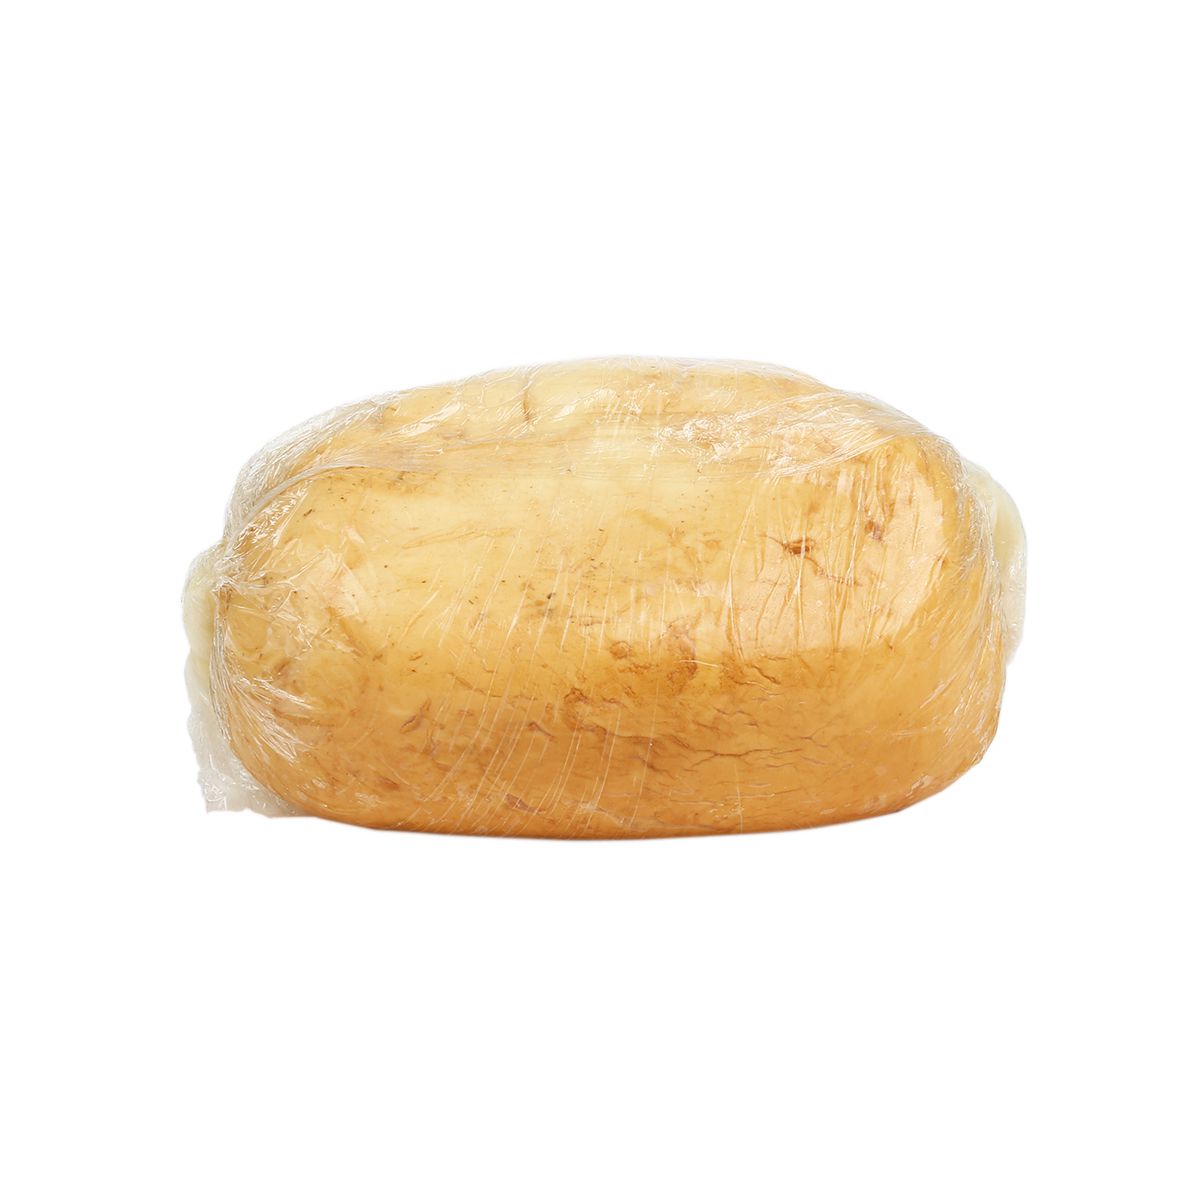 Lioni Latticini, Inc. Smoked Mozzarella Cheese Ball